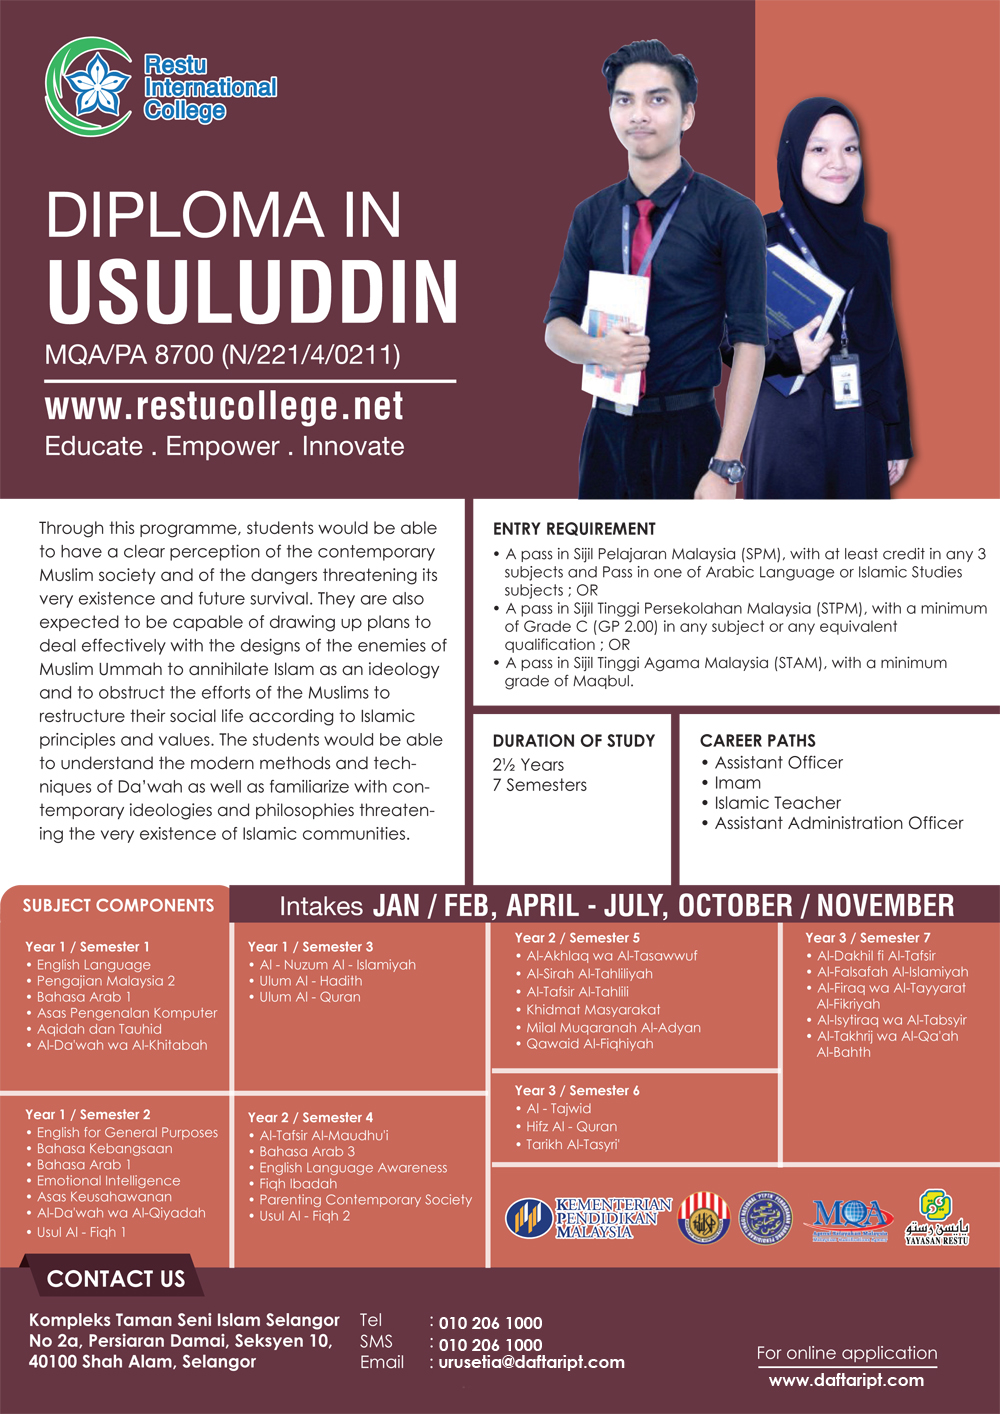 DAFTARIPTdotCOM-Diploma-in-Usuluddin